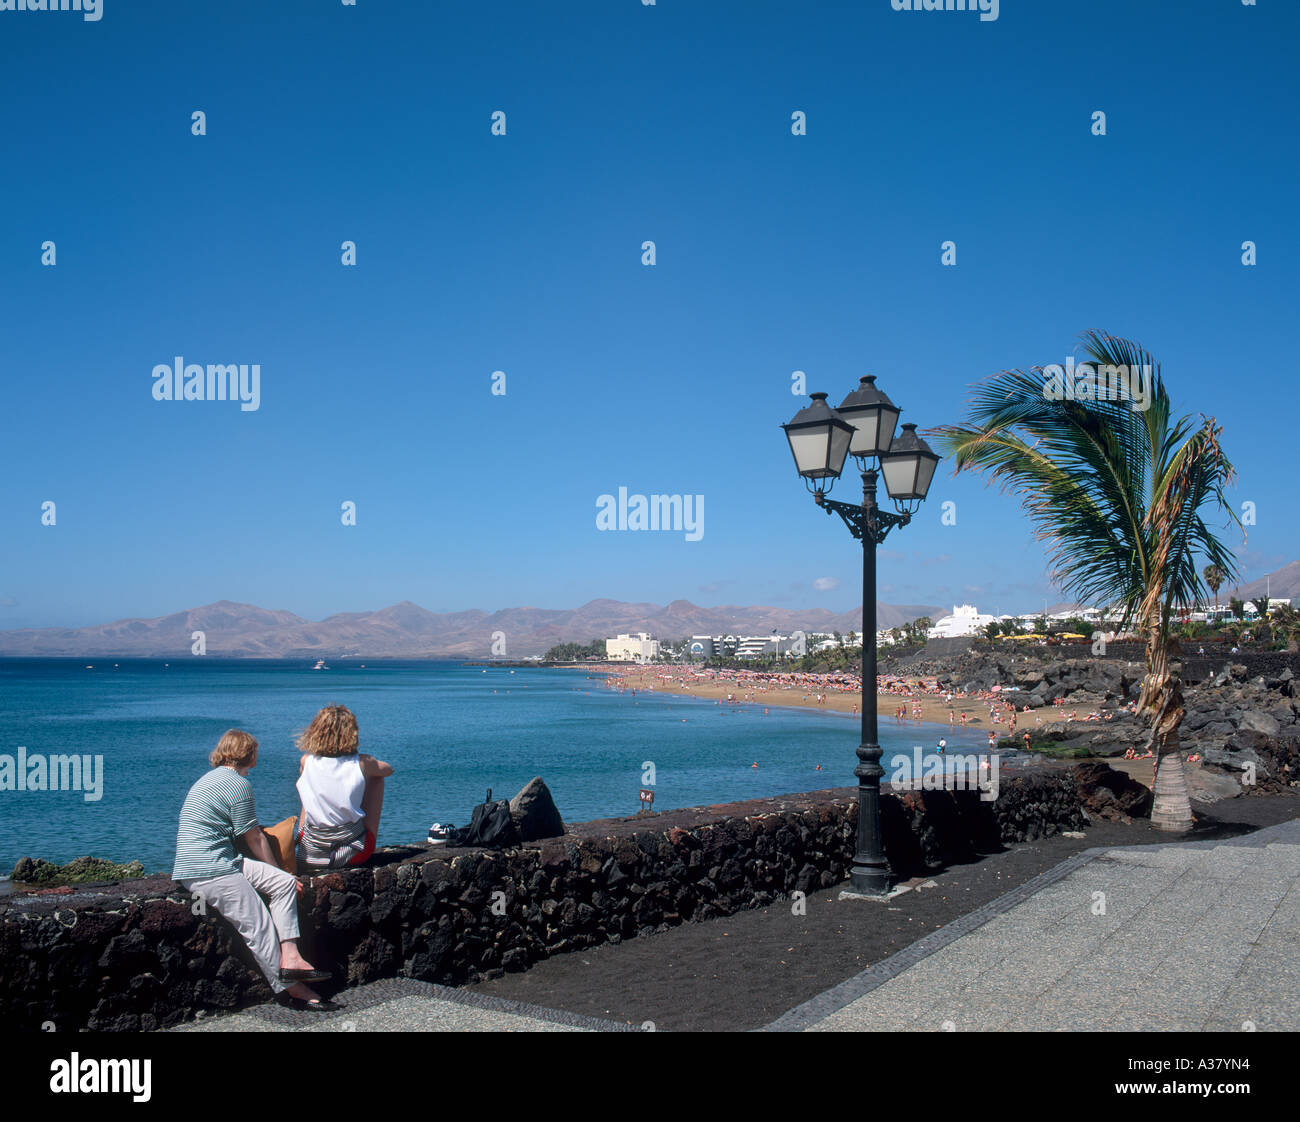 Promenade and Beach, Puerto del Carmen, Lanzarote, Canary Islands, Spain Stock Photo